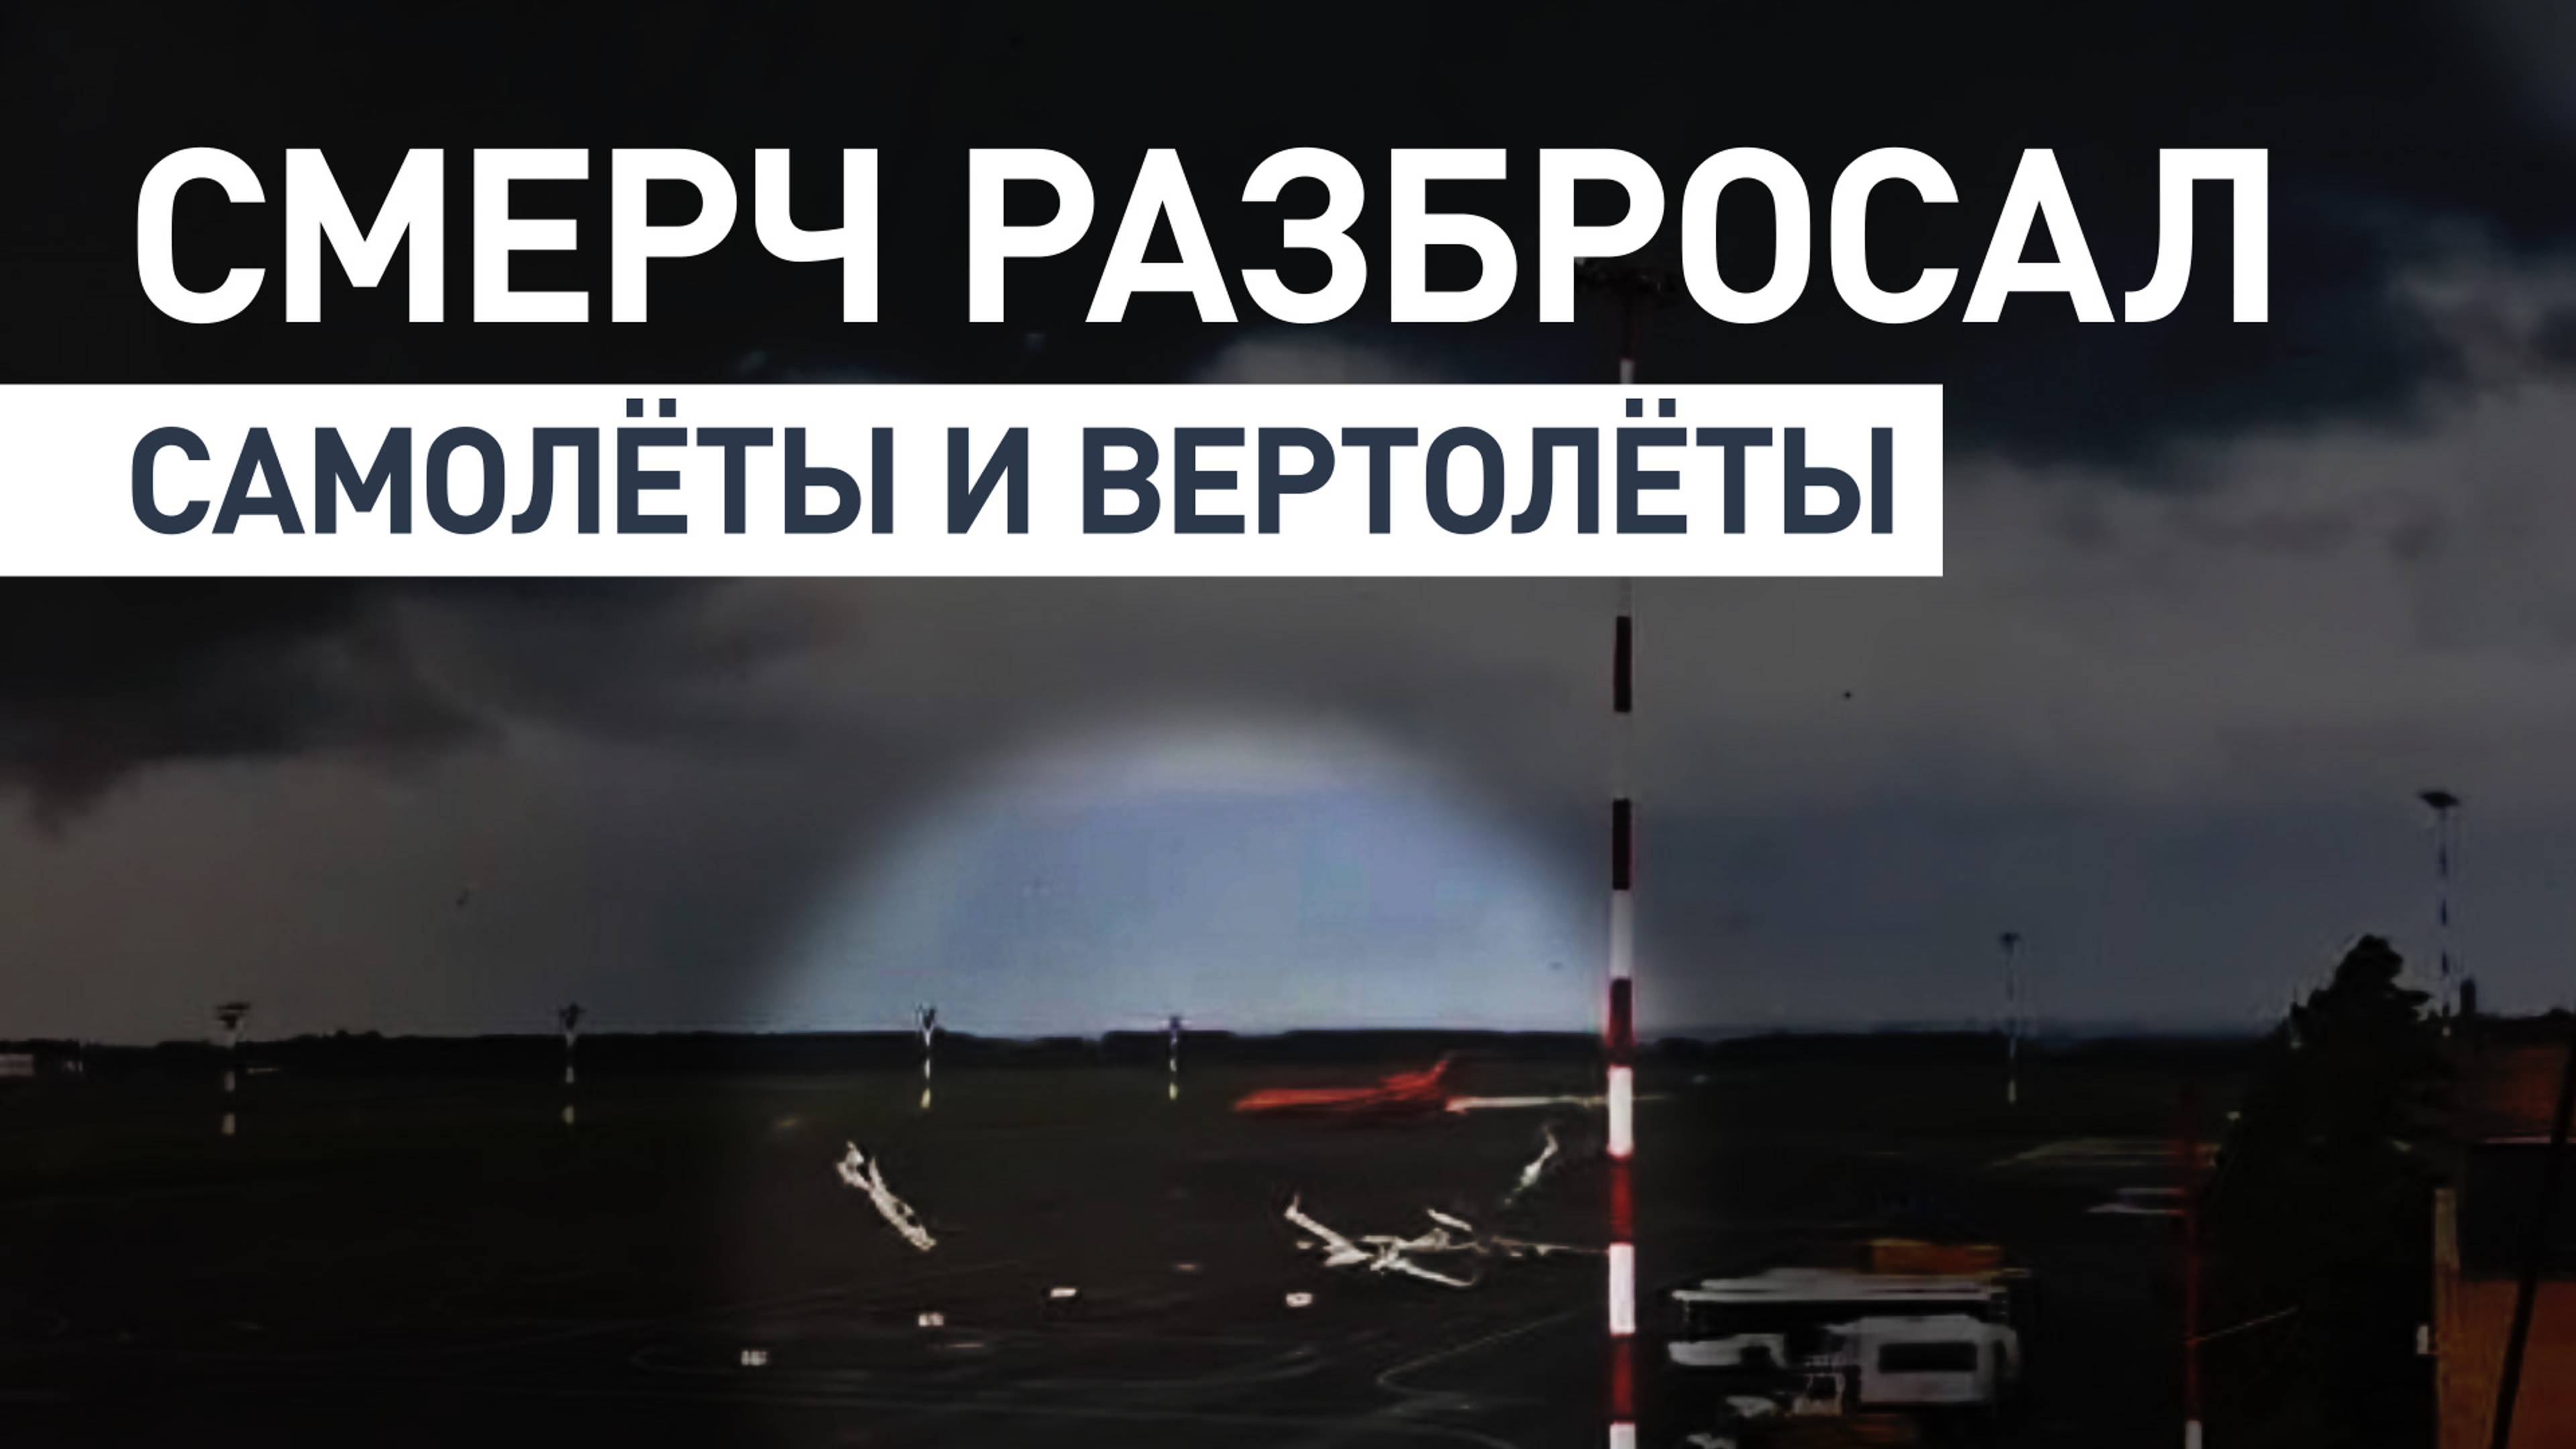 Ветер разбрасывает авиатехнику: полное видео смерча в аэропорту Нижнекамска